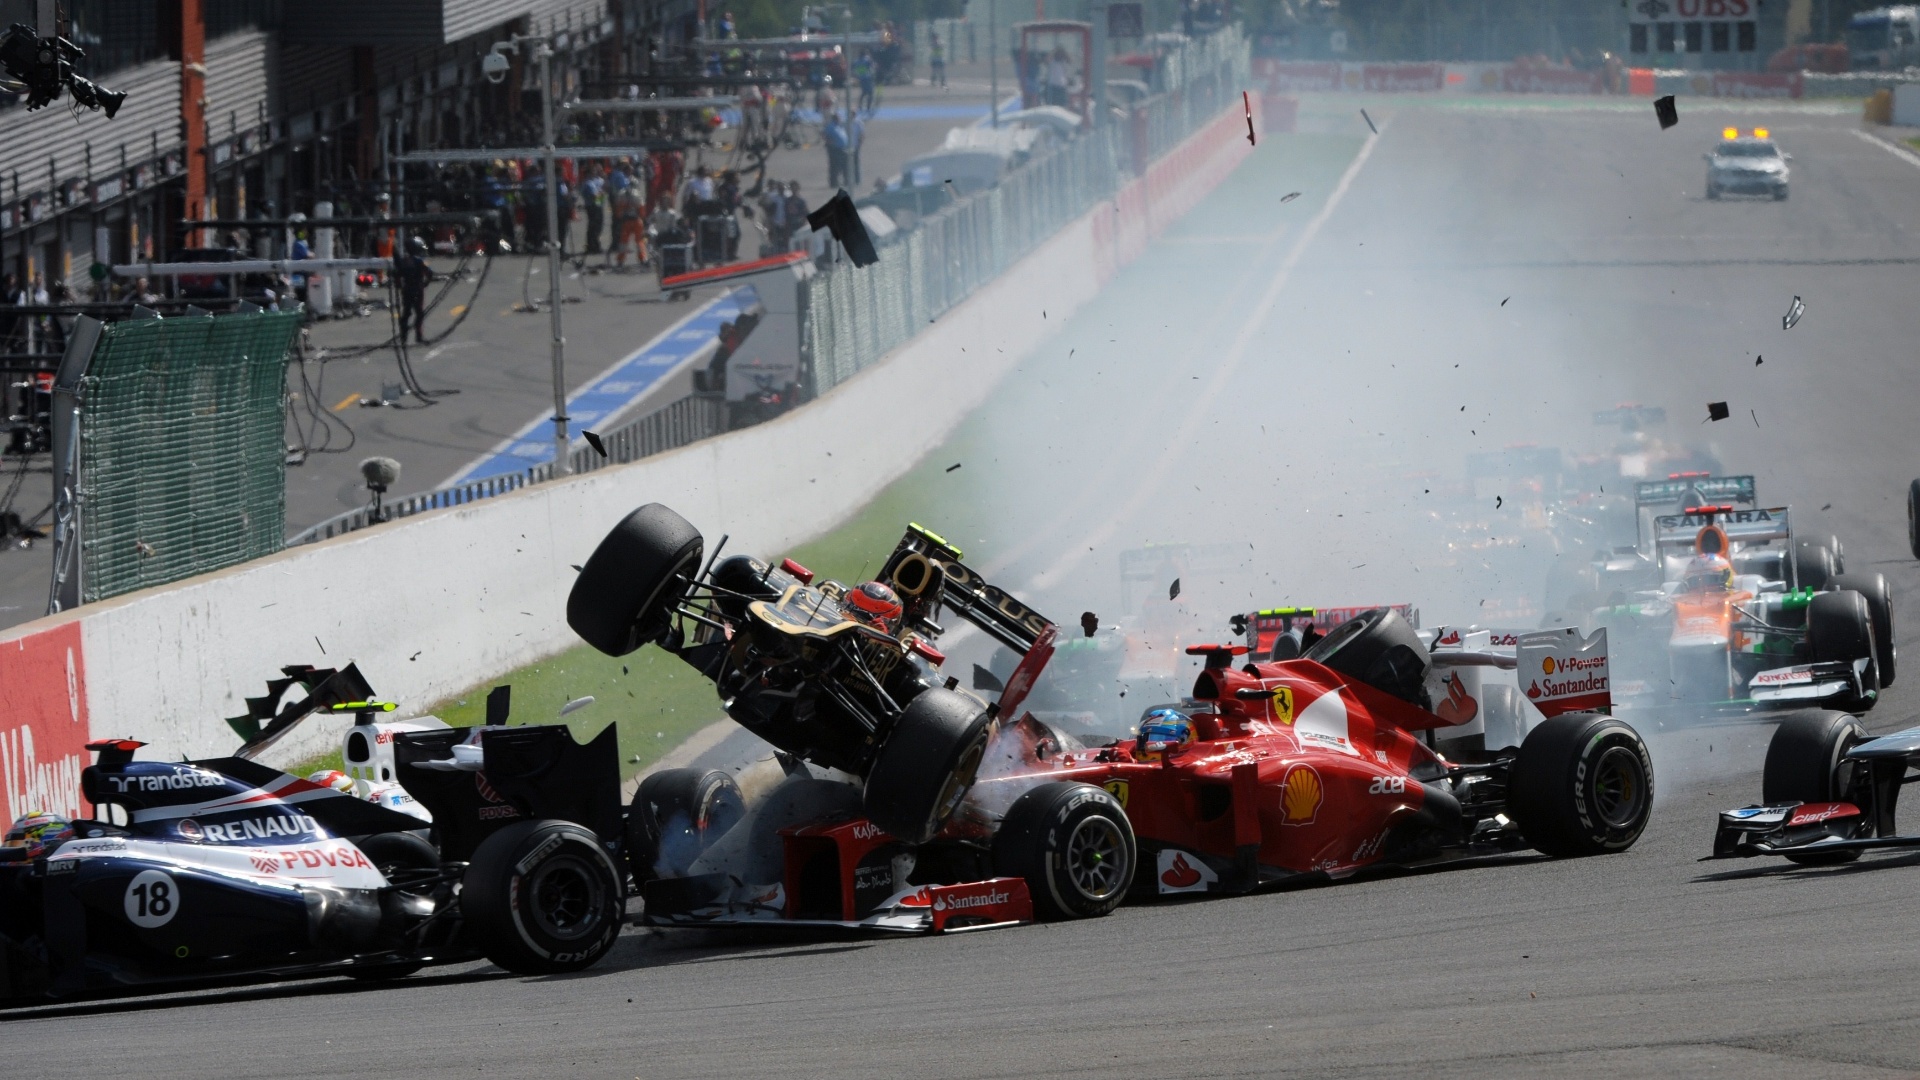 02.set.2012 - Romain Grosjean provoca grande acidente na largada e tira Fernando Alonso, Lewis Hamilton e Sergio Perez do GP da Bélgica